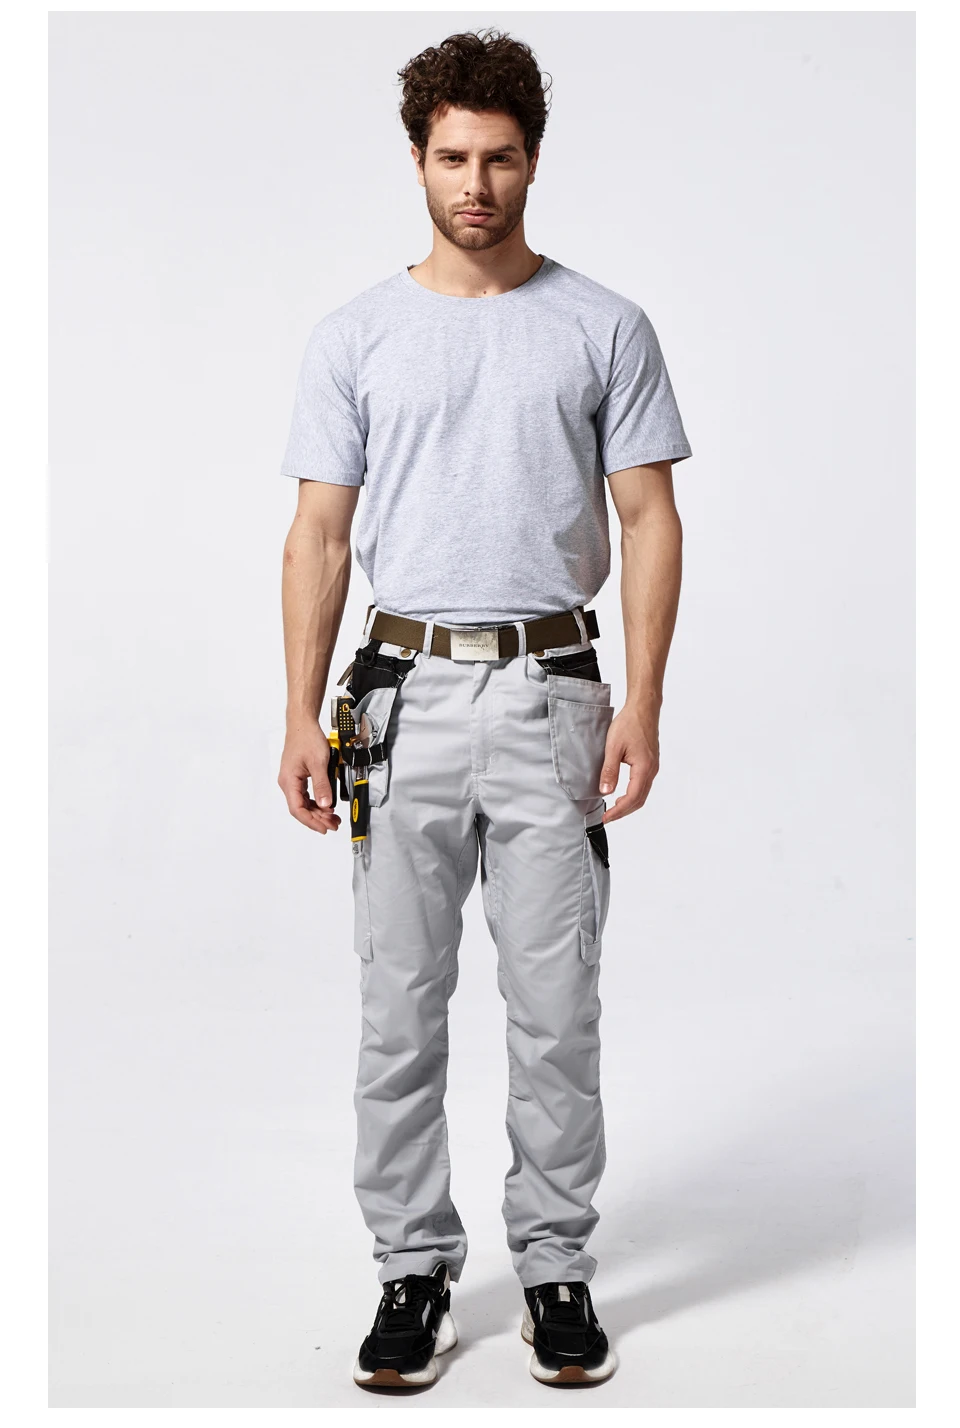 Мужские рабочие брюки с несколькими карманами для инструментов, летние брюки высокого качества, безопасные рабочие механические брюки-карго, рабочие брюки серого цвета B218